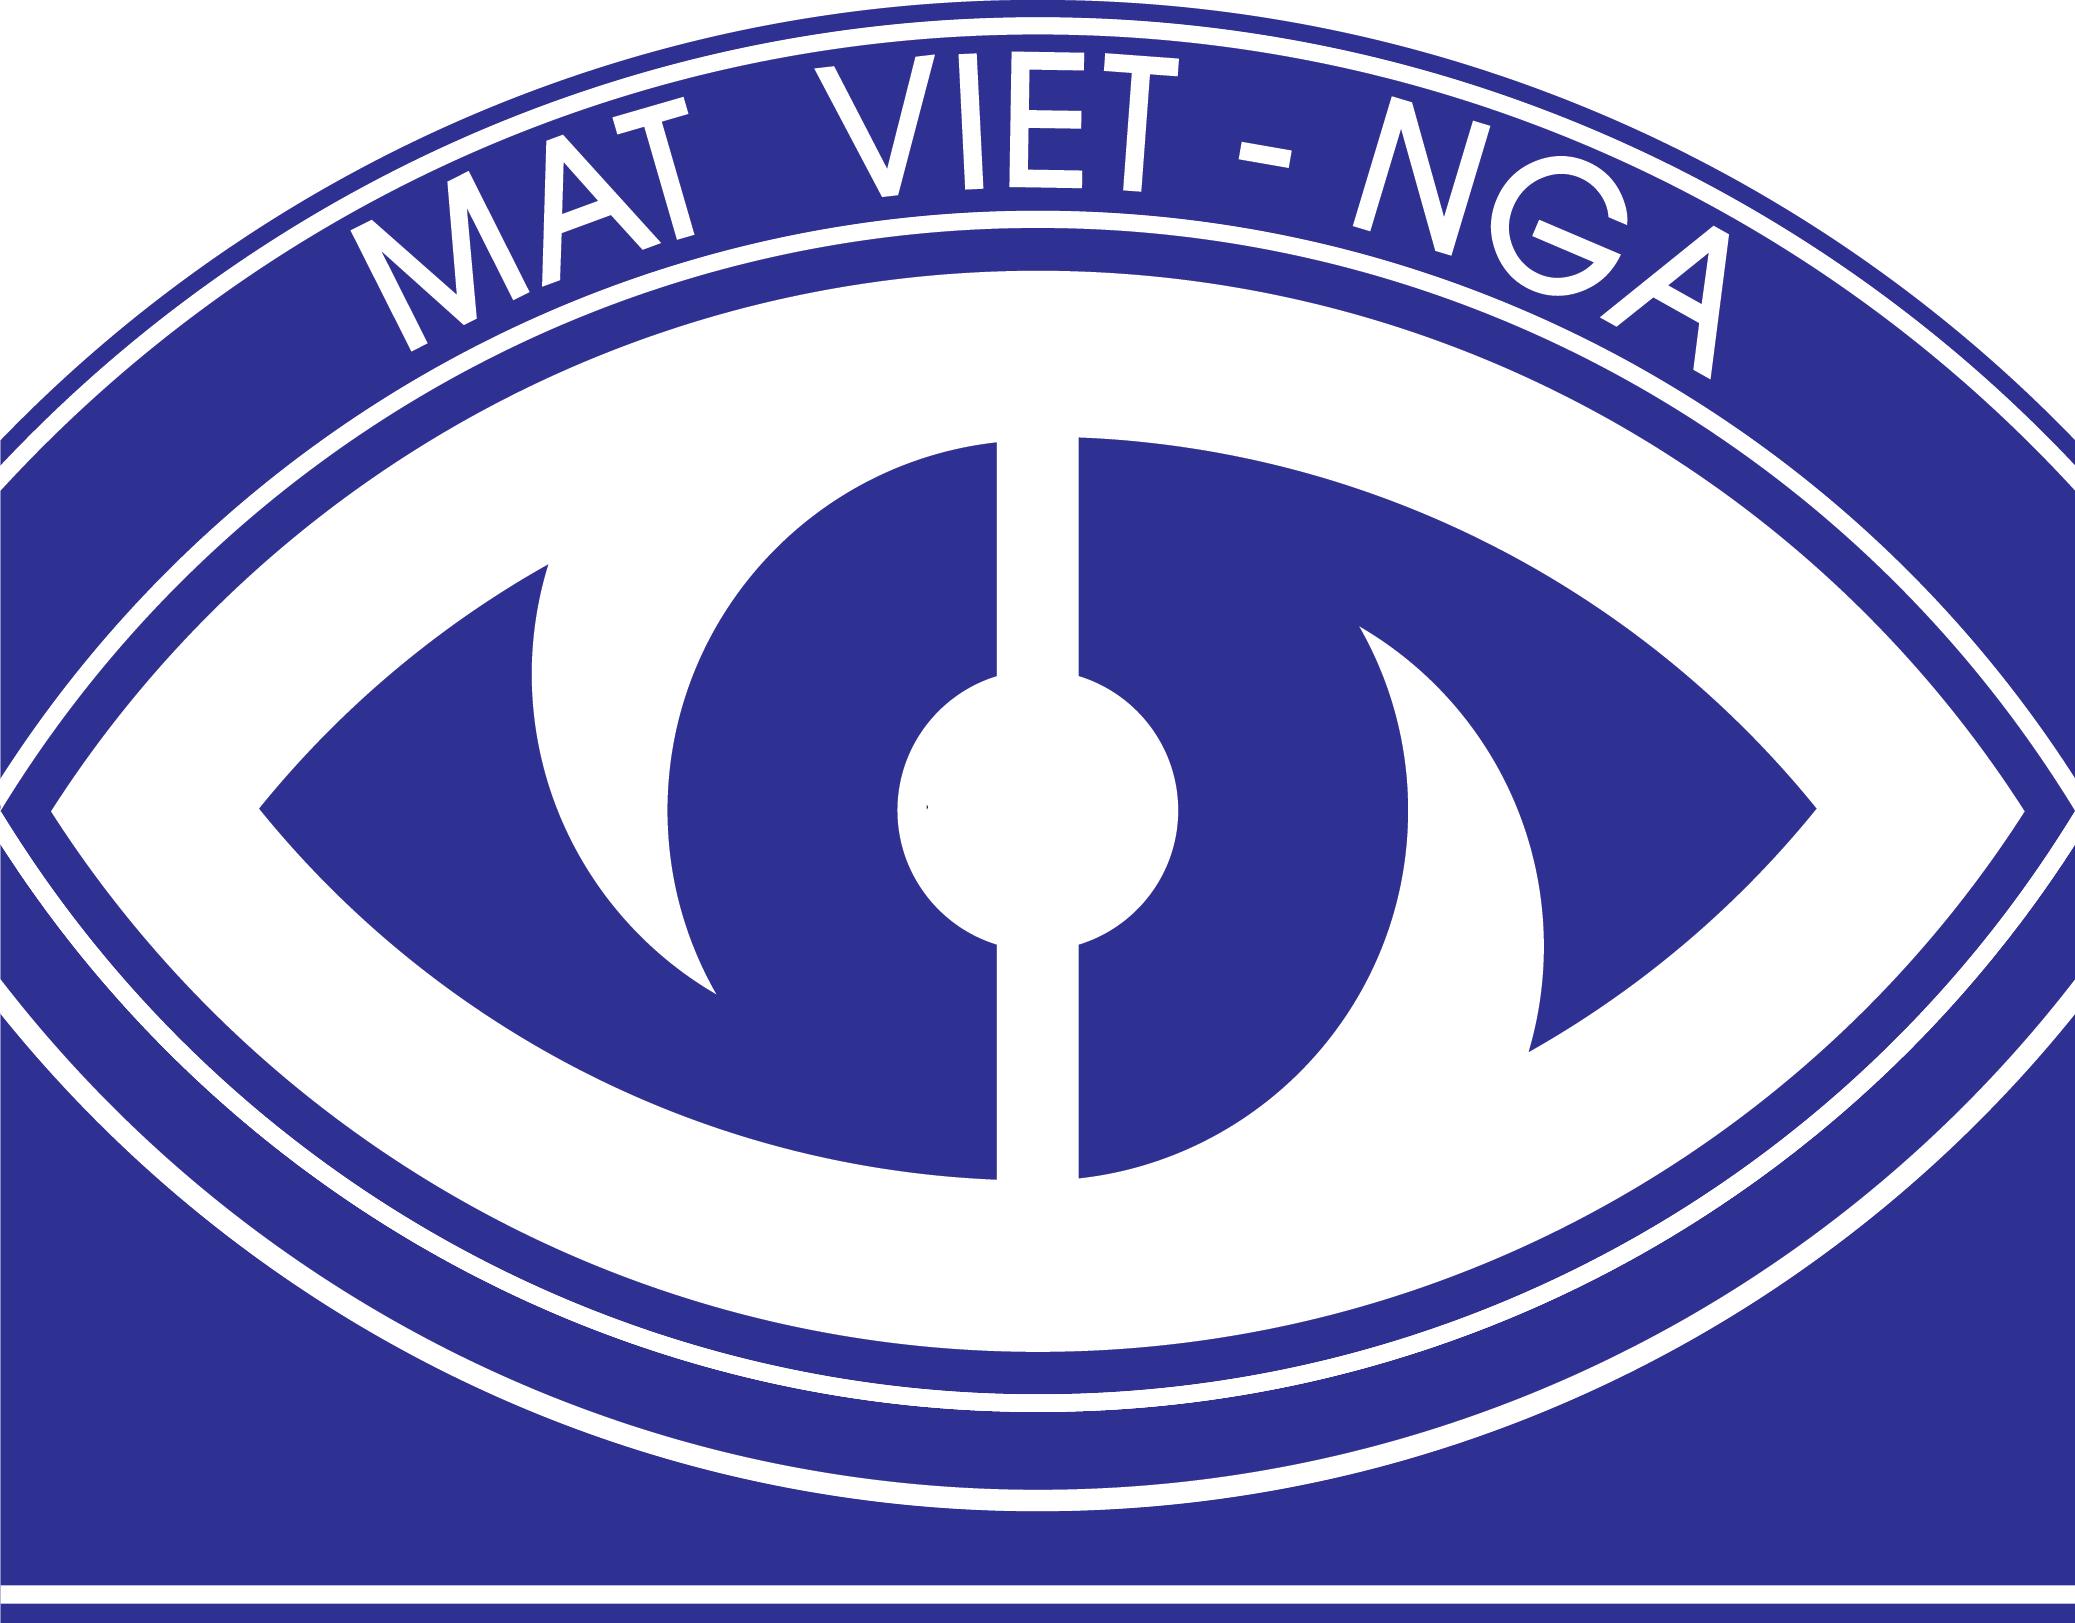 Tập đoàn Y tế mắt Việt Nga